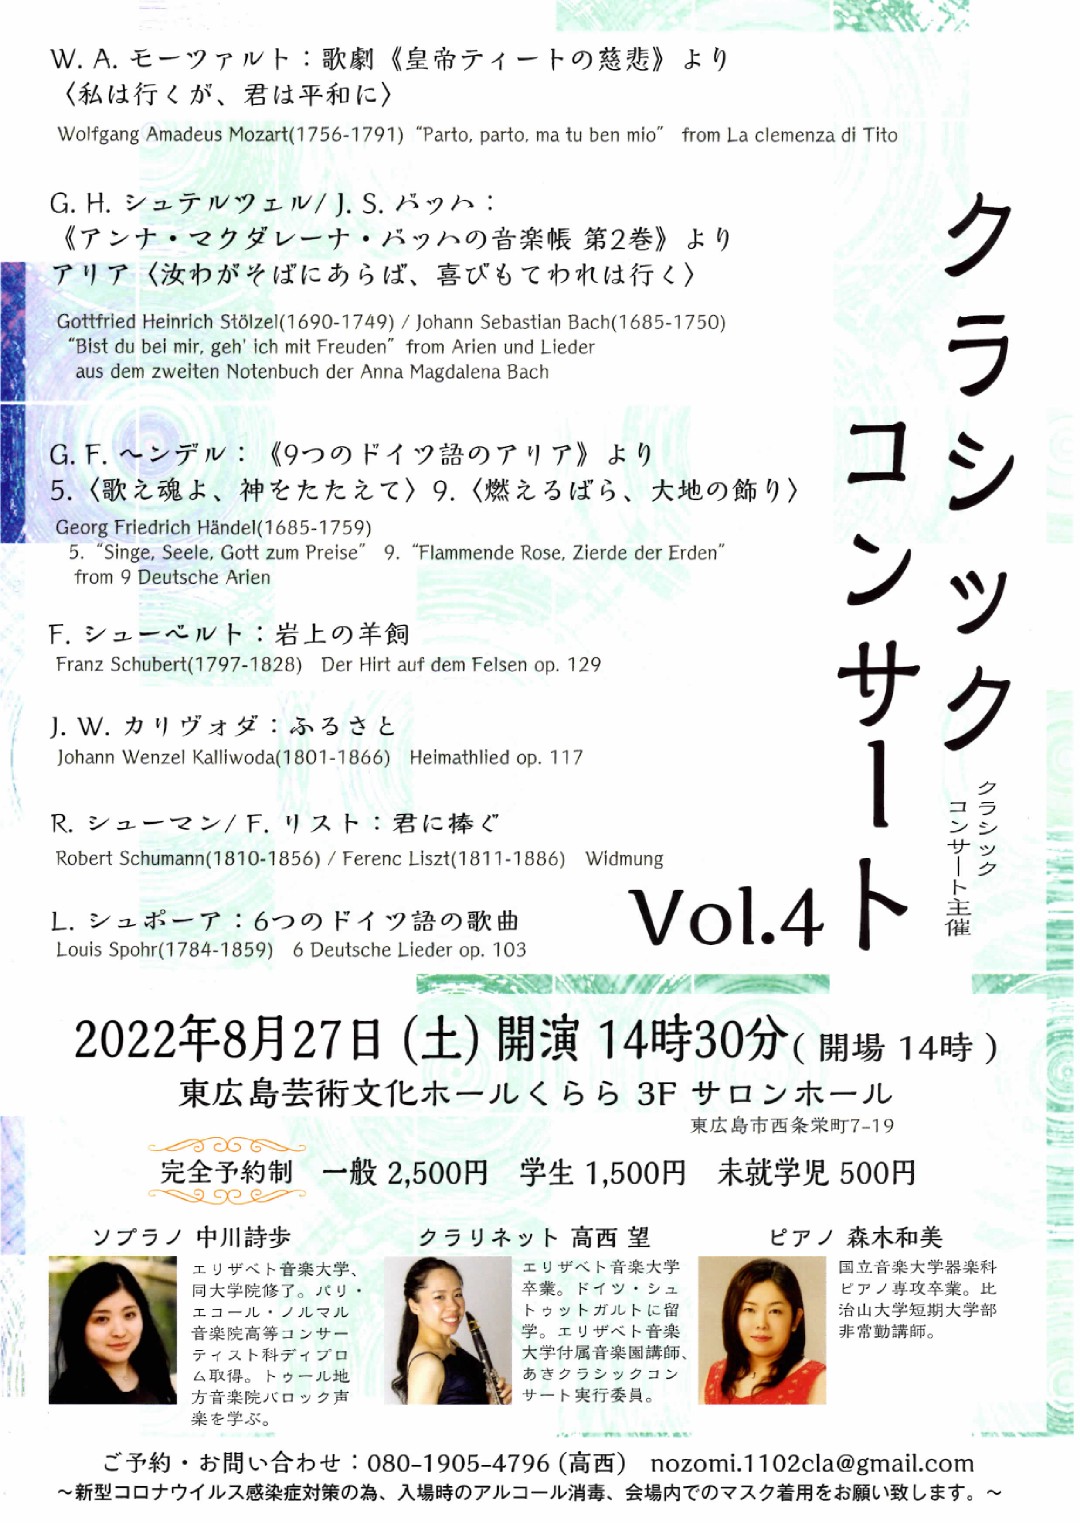 クラシックコンサート Vol.4　ソプラノ、クラリネットとピアノによるコンサート